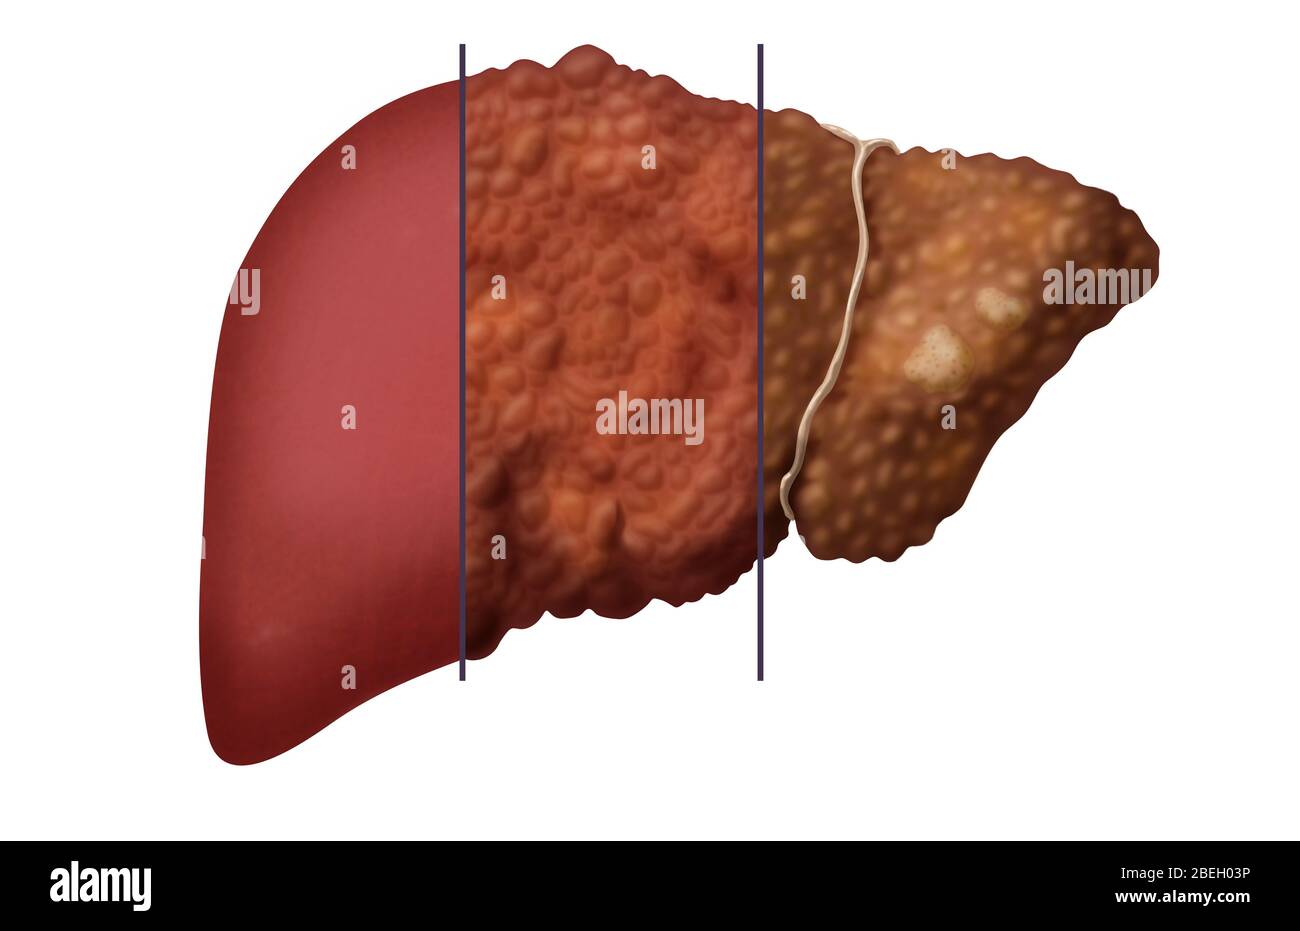 Liver Comparison Stock Photo